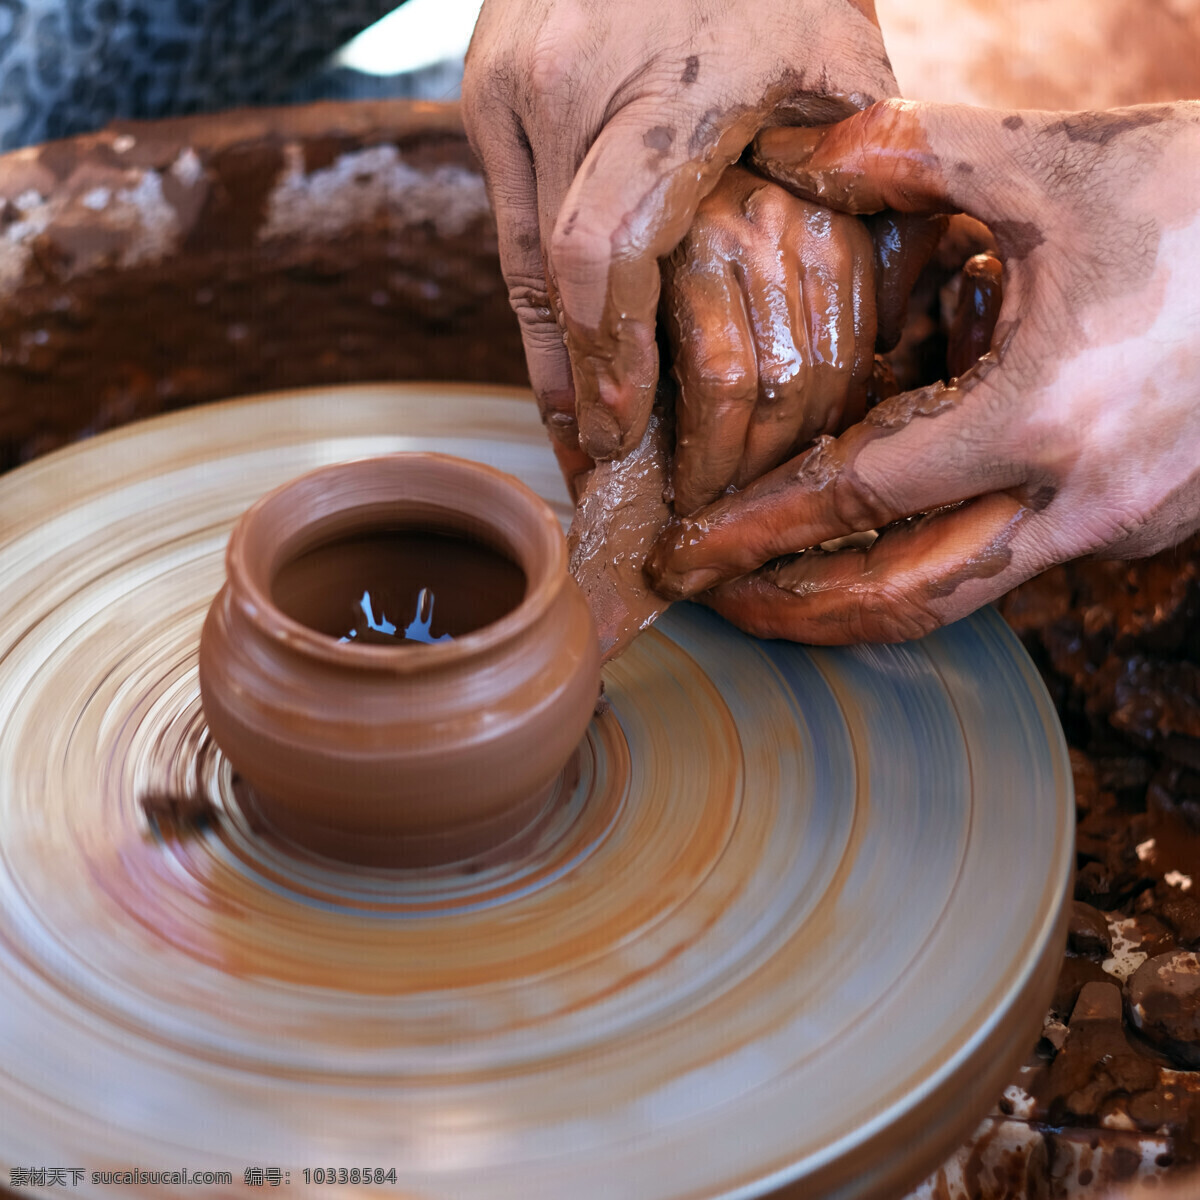 制作 陶器 工人 陶罐制作 手势 陶瓷 瓷器 陶艺 陶瓷工艺 其他艺术 文化艺术